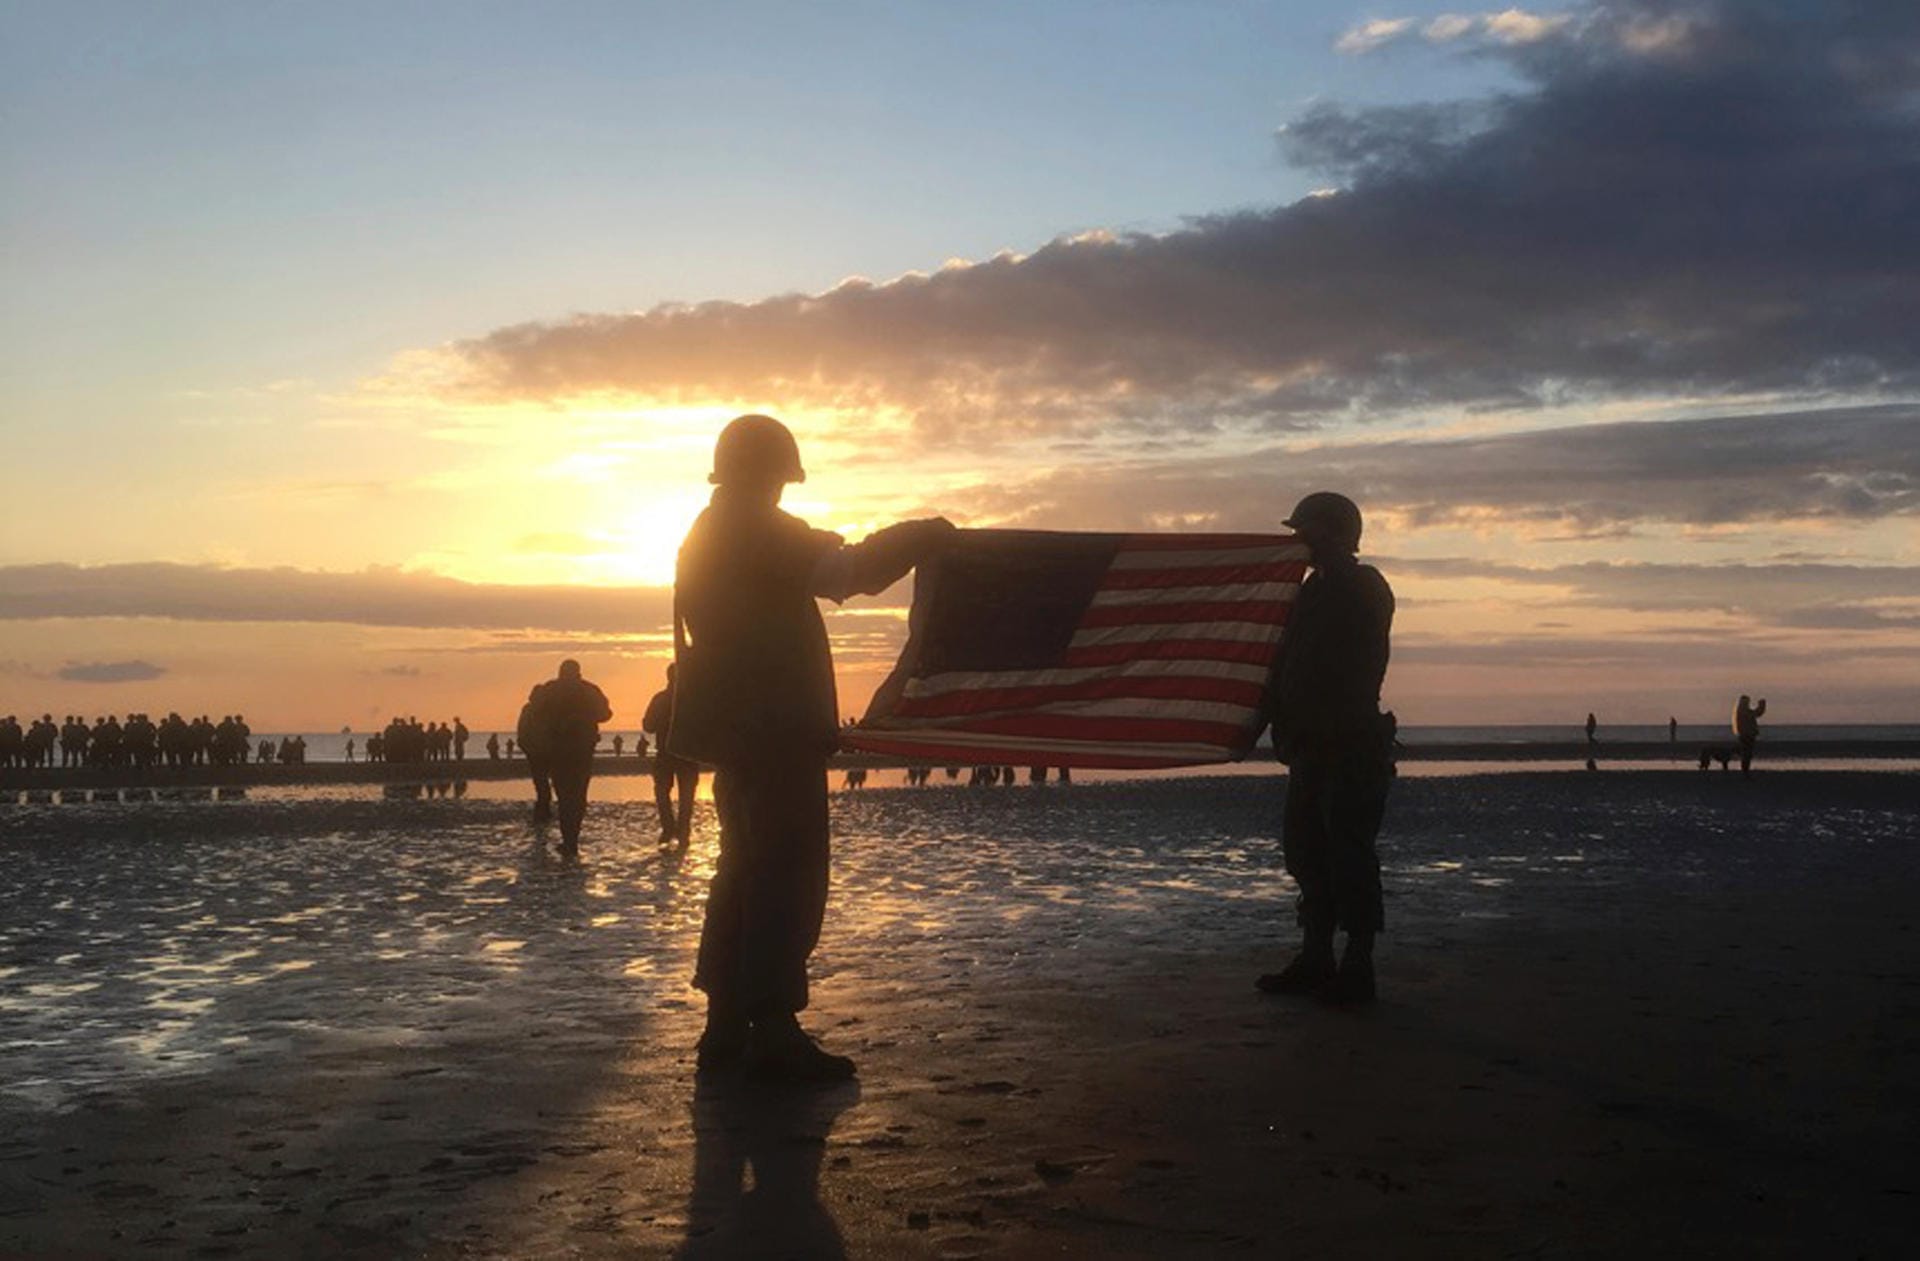 Frankreich, Vierville-Sur-Mer: Zwei Männer in historischen Uniformen halten bei Sonnenaufgang eine amerikanische Flagge als Teil der Veranstaltungen anlässlich des 75. Jahrestags des D-Day am Omaha Beach.